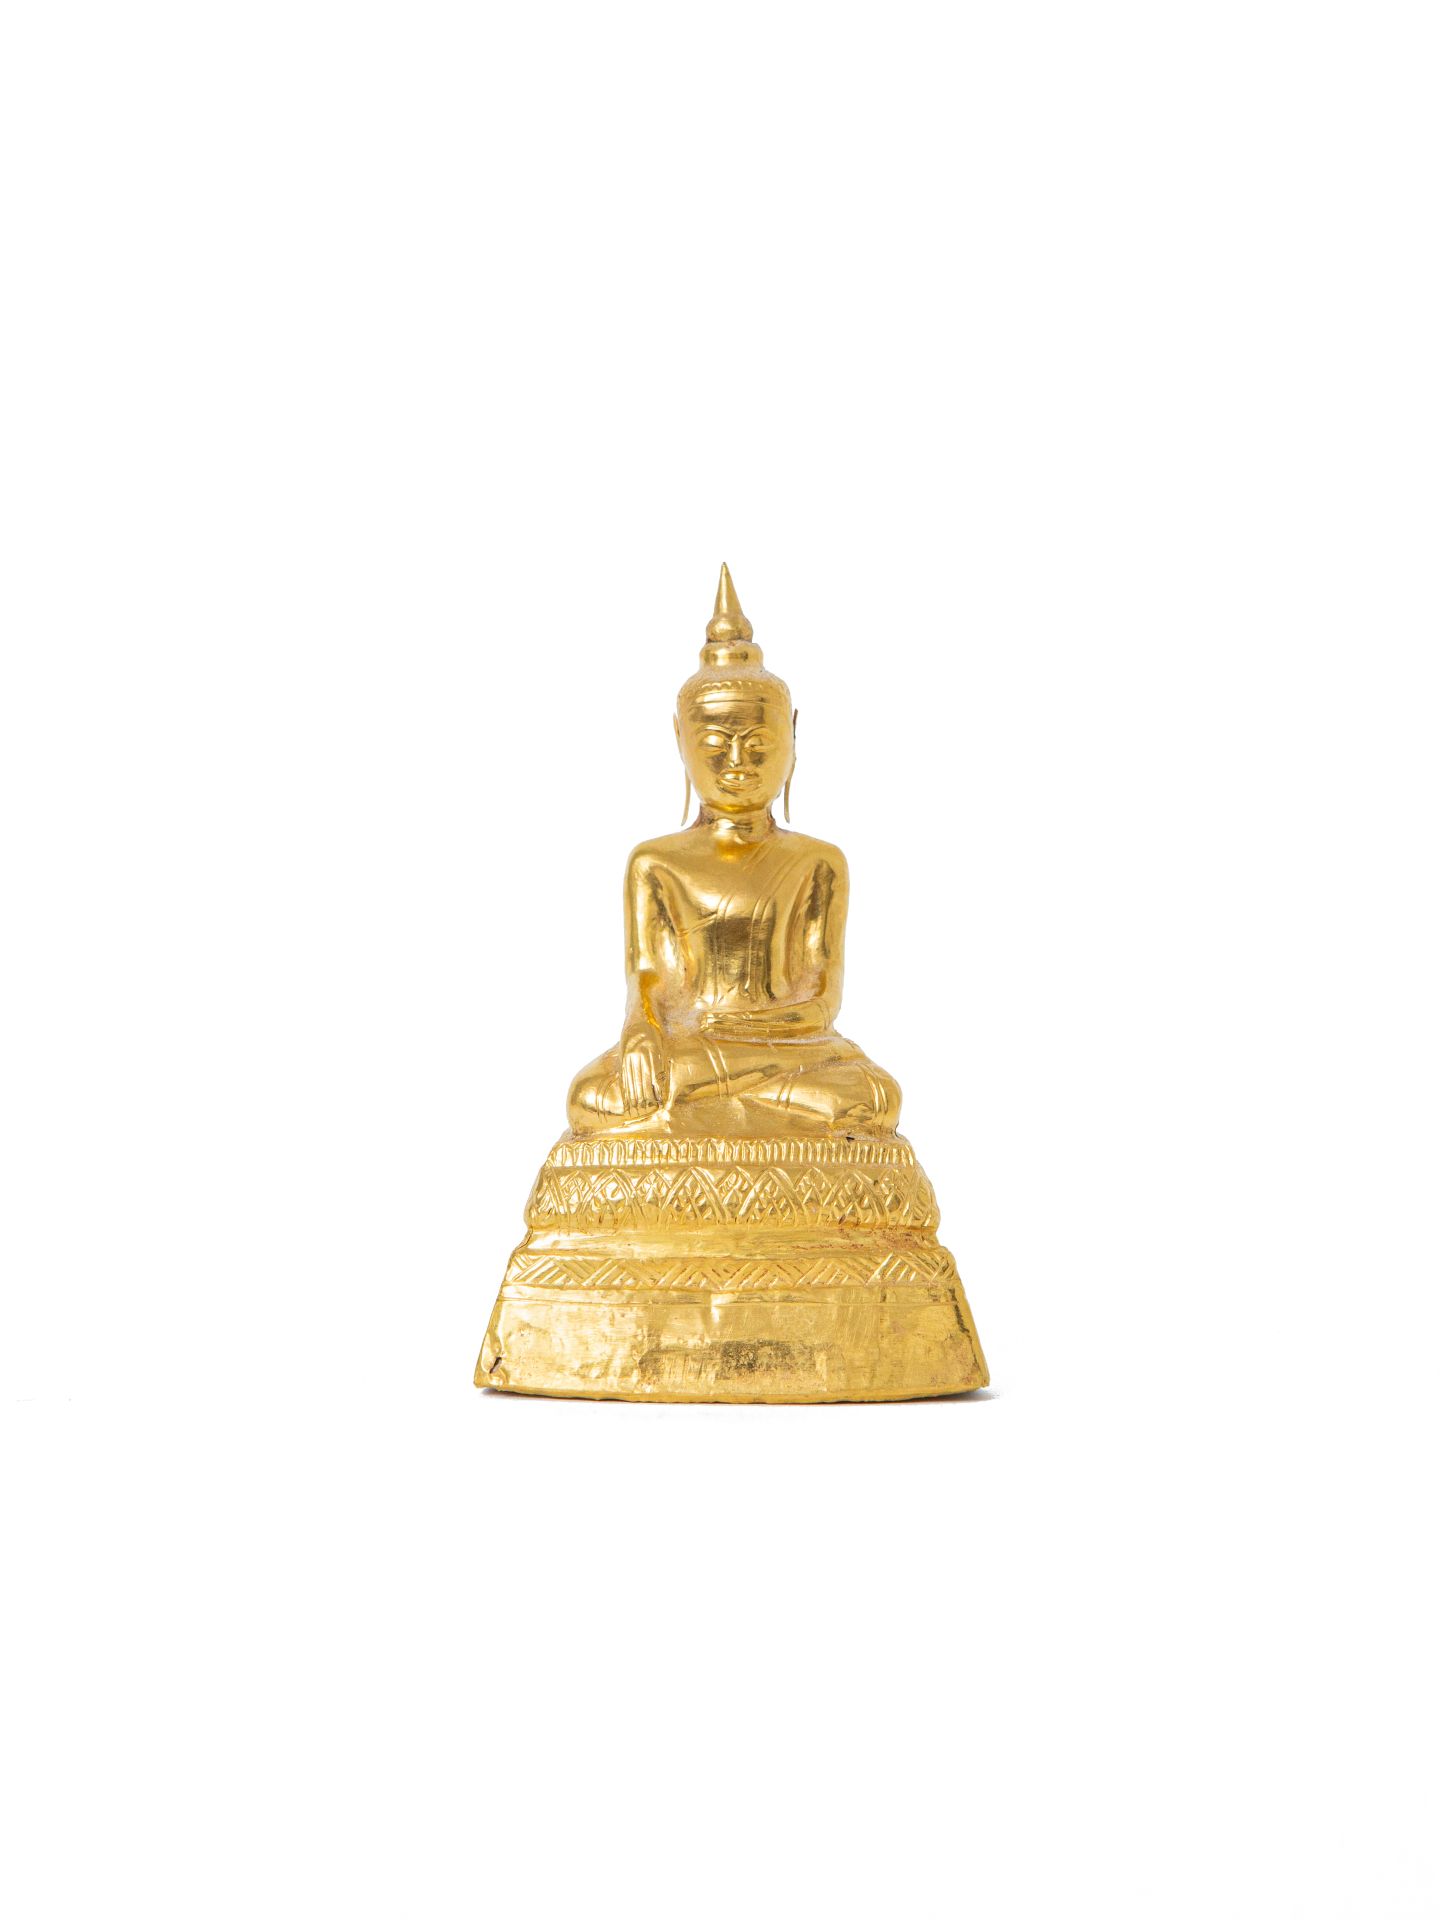 Null 柬埔寨或泰国，大城王国，晚期

一尊金质浮雕佛像，以padmasana坐于高底座上，底座上有一排风格化的雕刻莲花瓣，右手持bhumisparsamud&hellip;